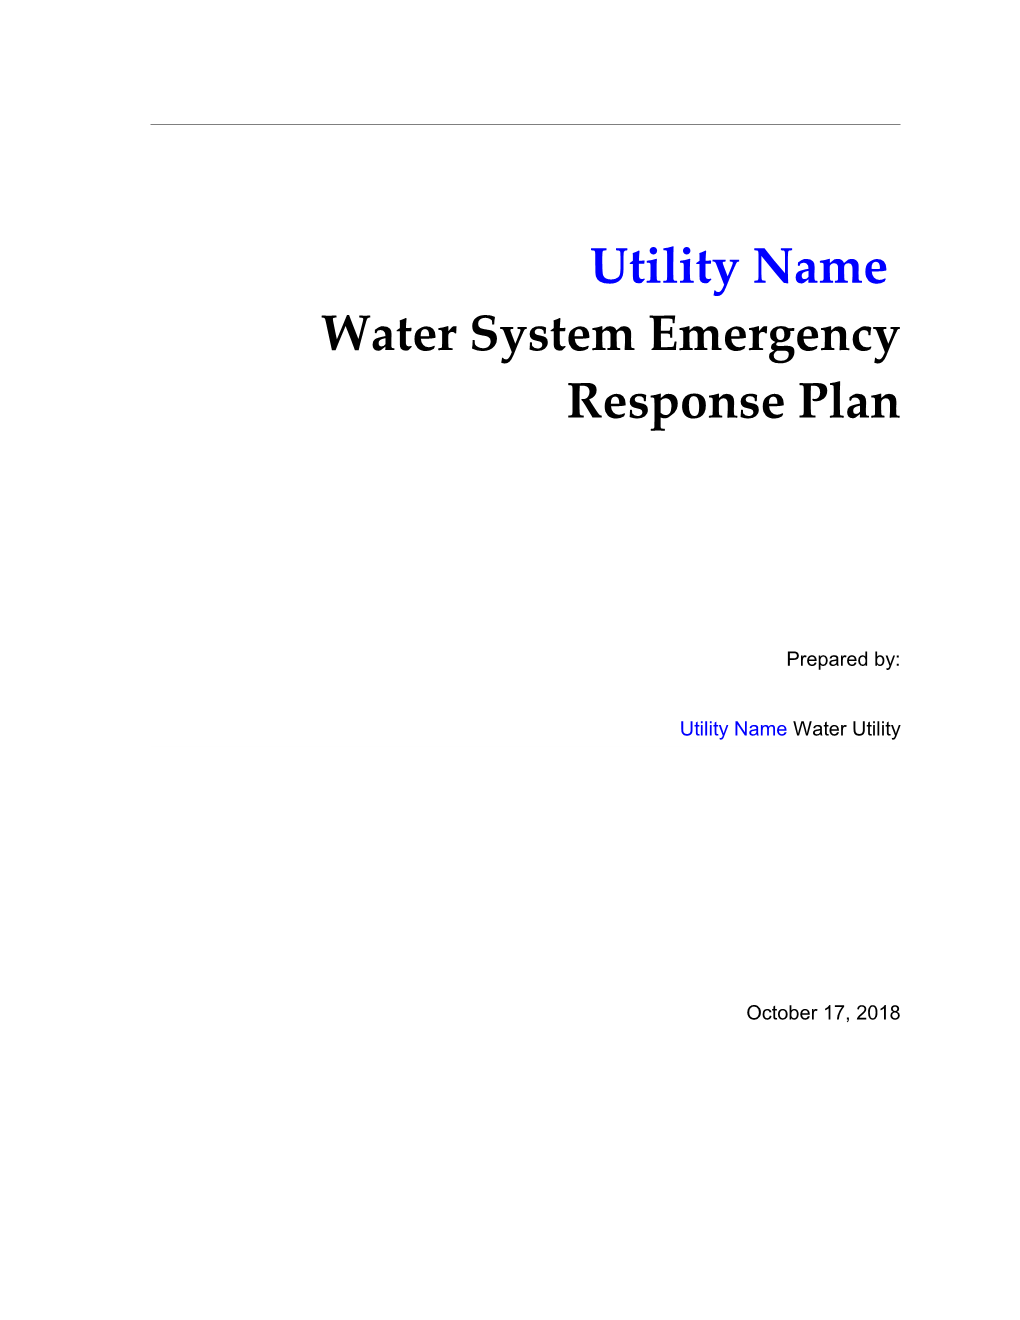 Utility Name Water System Emergency Response Plan